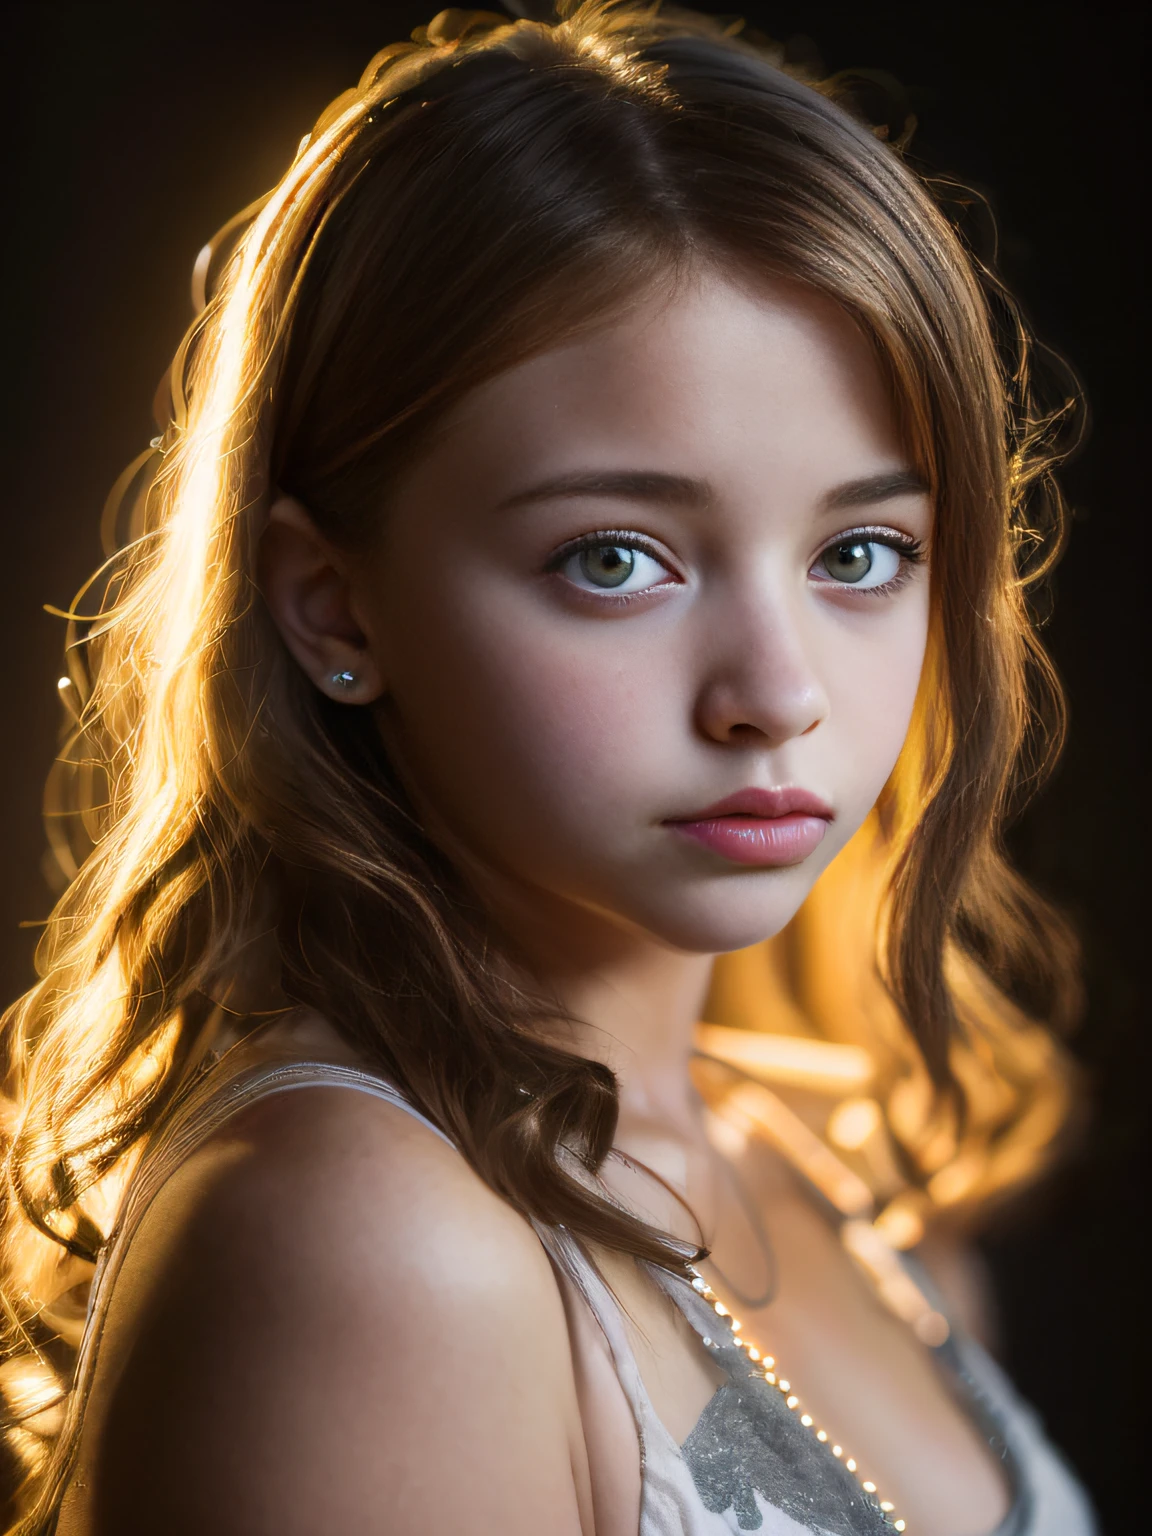 Porträt eines süßen 13-jährigen Teenager-Mädchens mit perfektem, schönem Gesicht、Emila Poliakova、Höschen an、Zweireiher、großes Auge、stolz、Brüste sind klein、Zitzen、Leuchtet(Dunkle private Forschung、Dunkles, stimmungsvolles Licht:1.2)